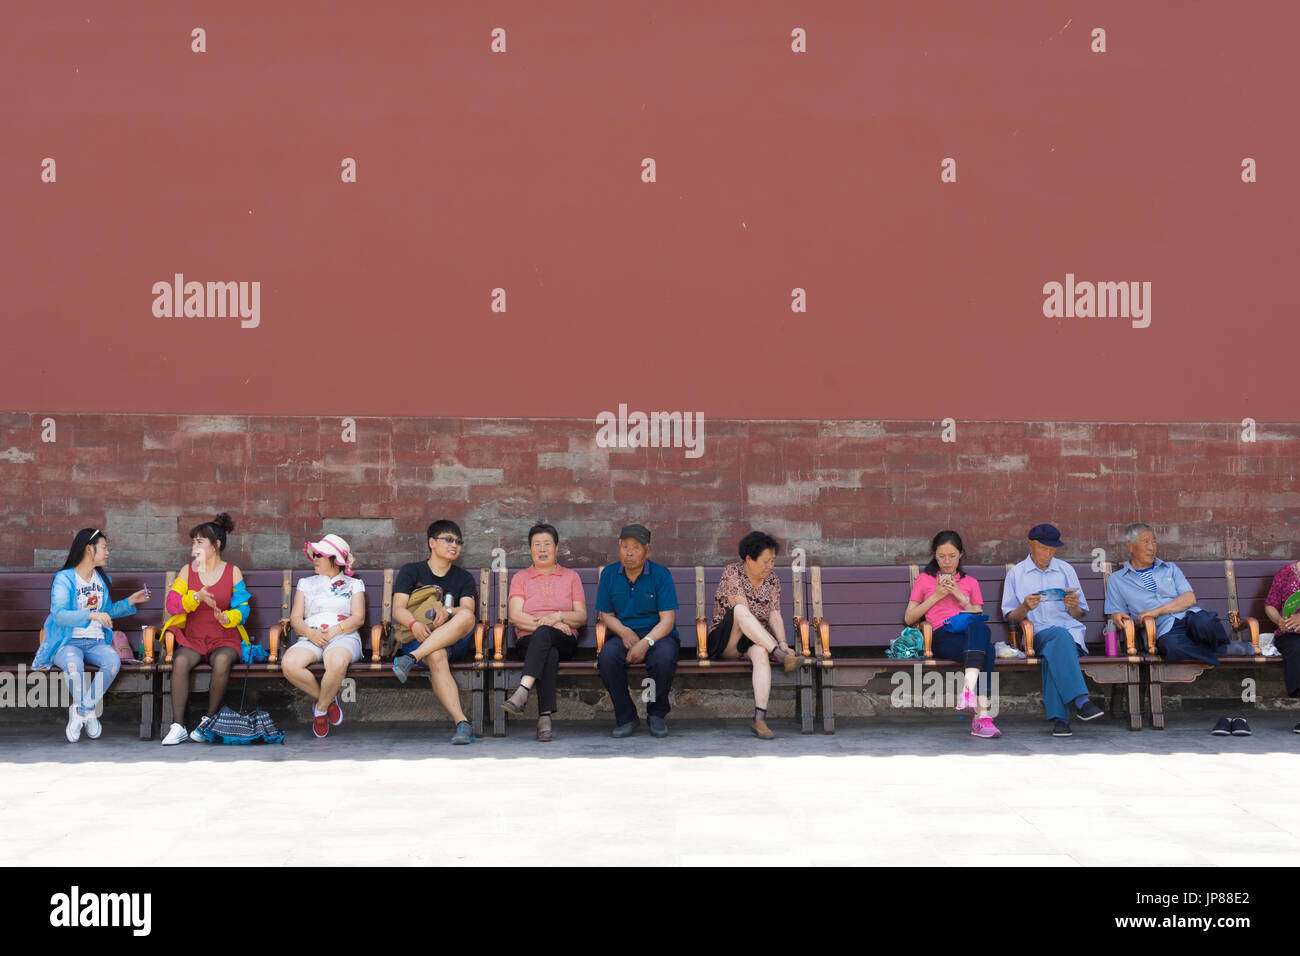 Los turistas chinos de diferentes edades, sentados en un banco en la Ciudad Prohibida en Beijing - algunos descansando, algunos hablando, uno en su teléfono móvil Foto de stock